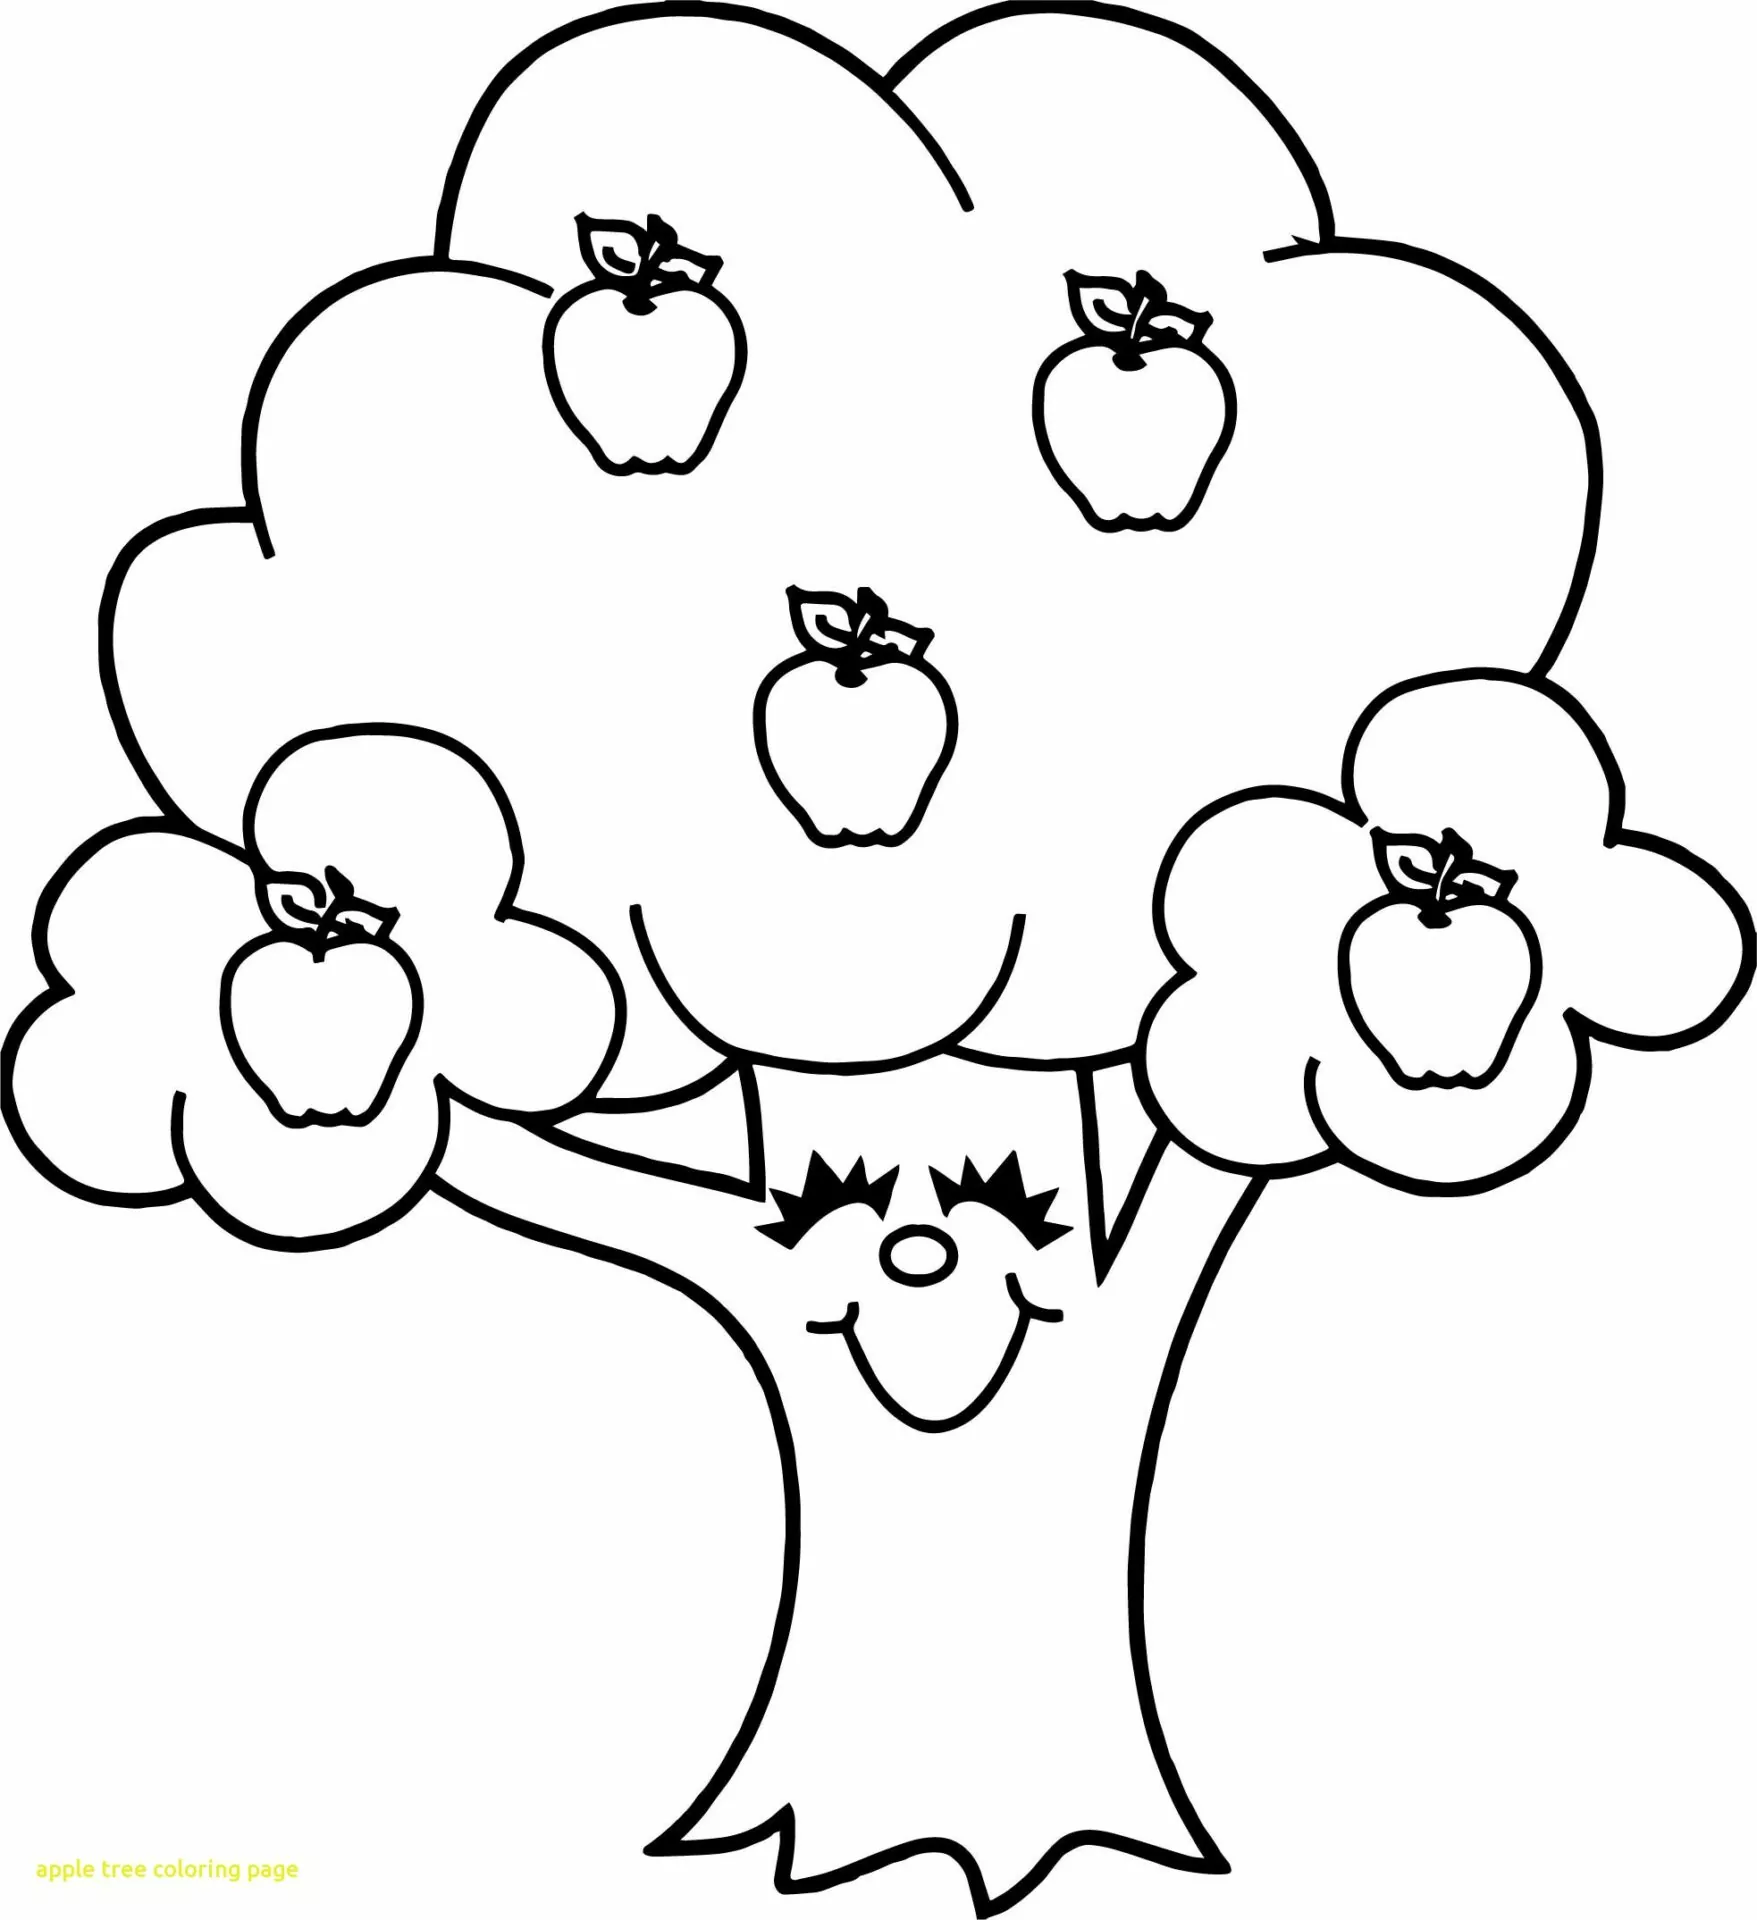 Cute Apple Tree